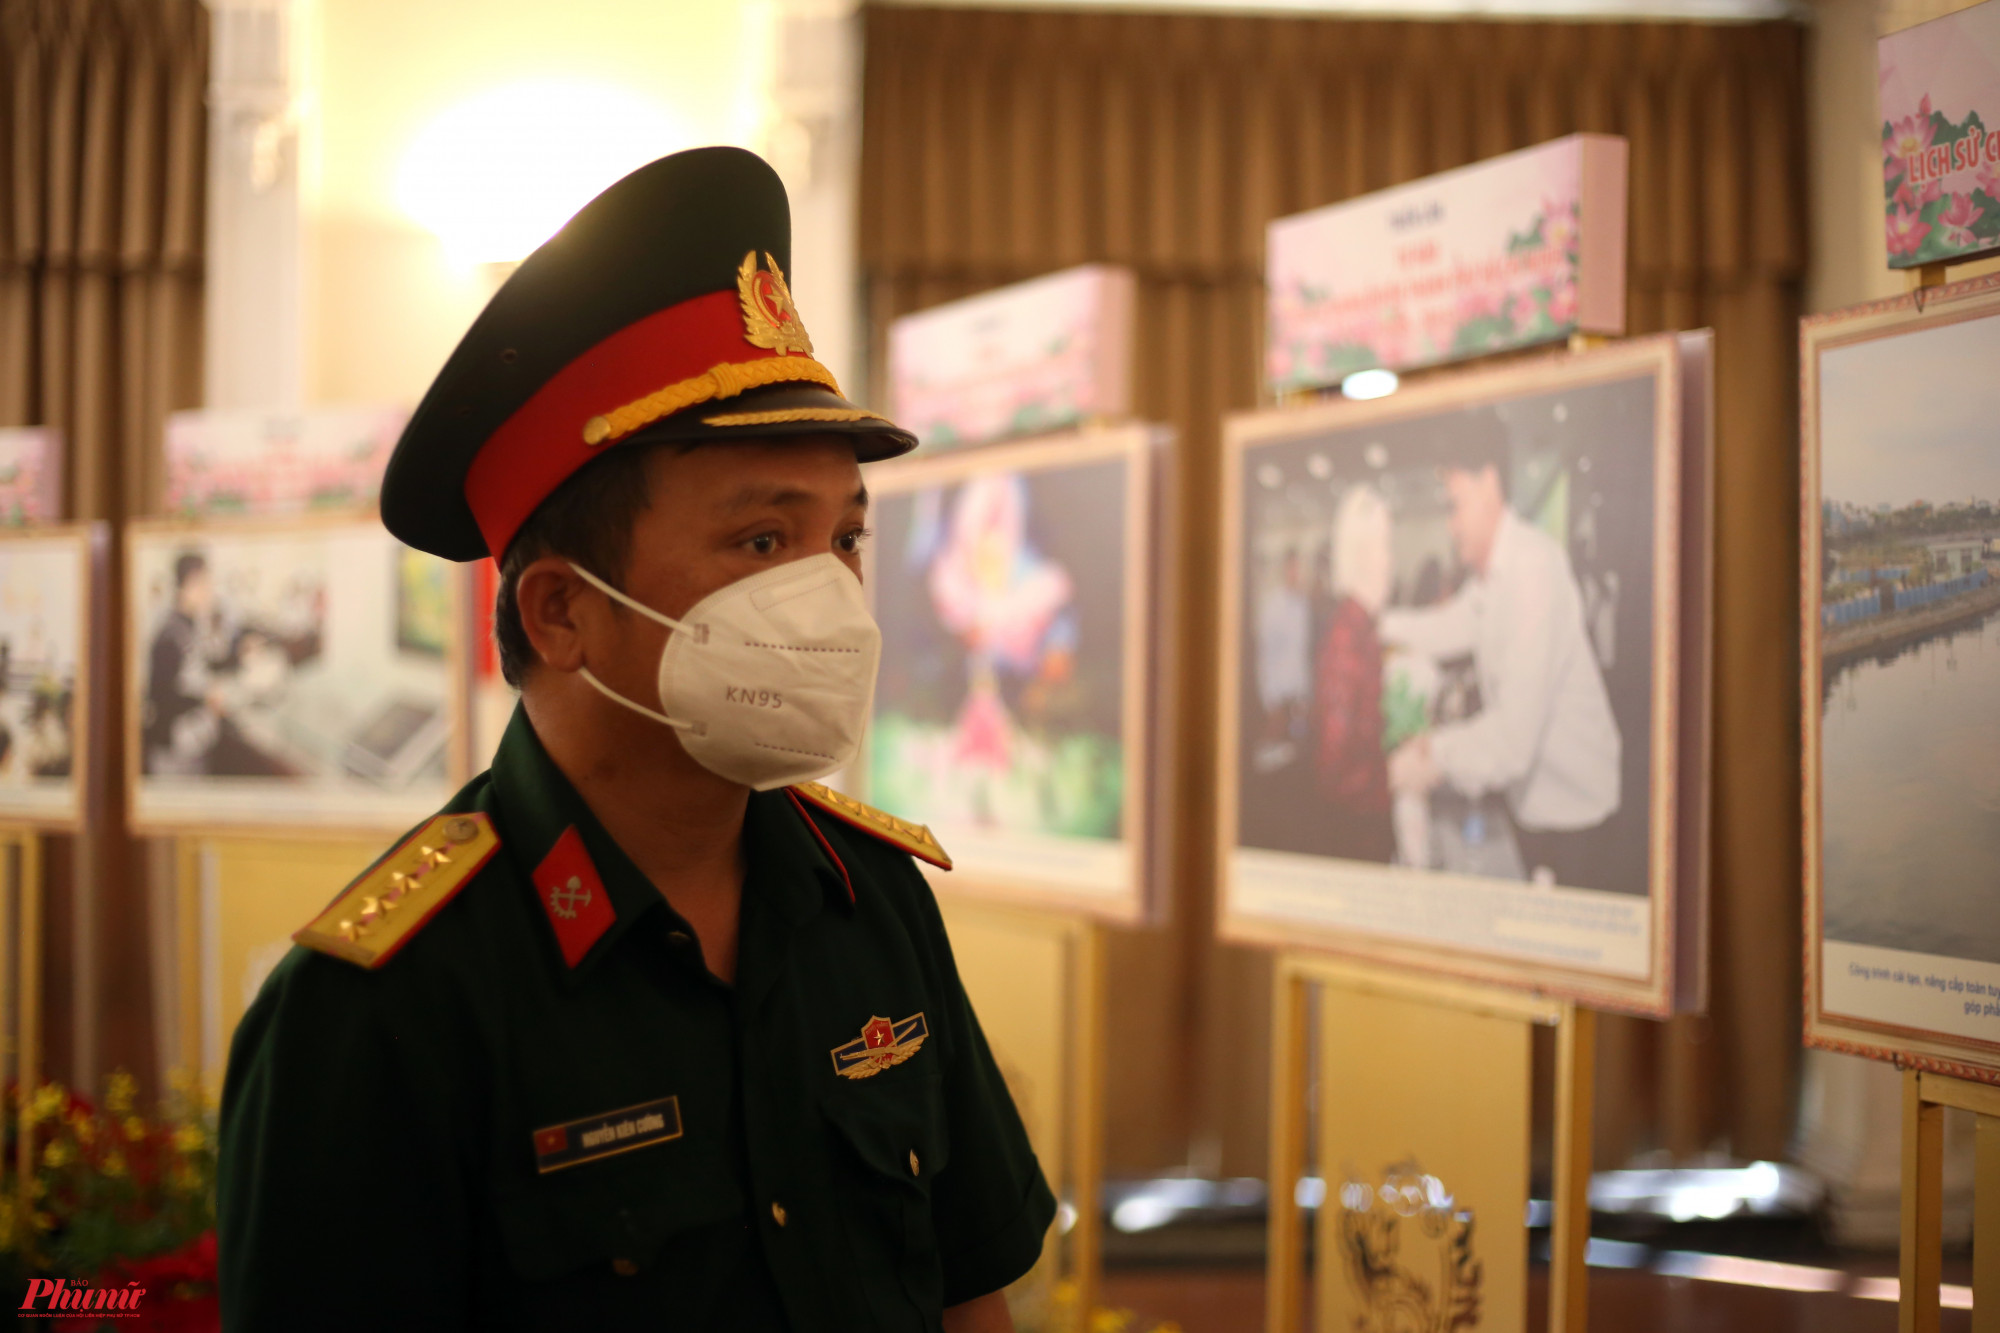 Đại uý Nguyễn Kiên Cường, hiện đang công tác tại Phòng Tham mưu Bộ Tư lệnh Thành phố cho biết